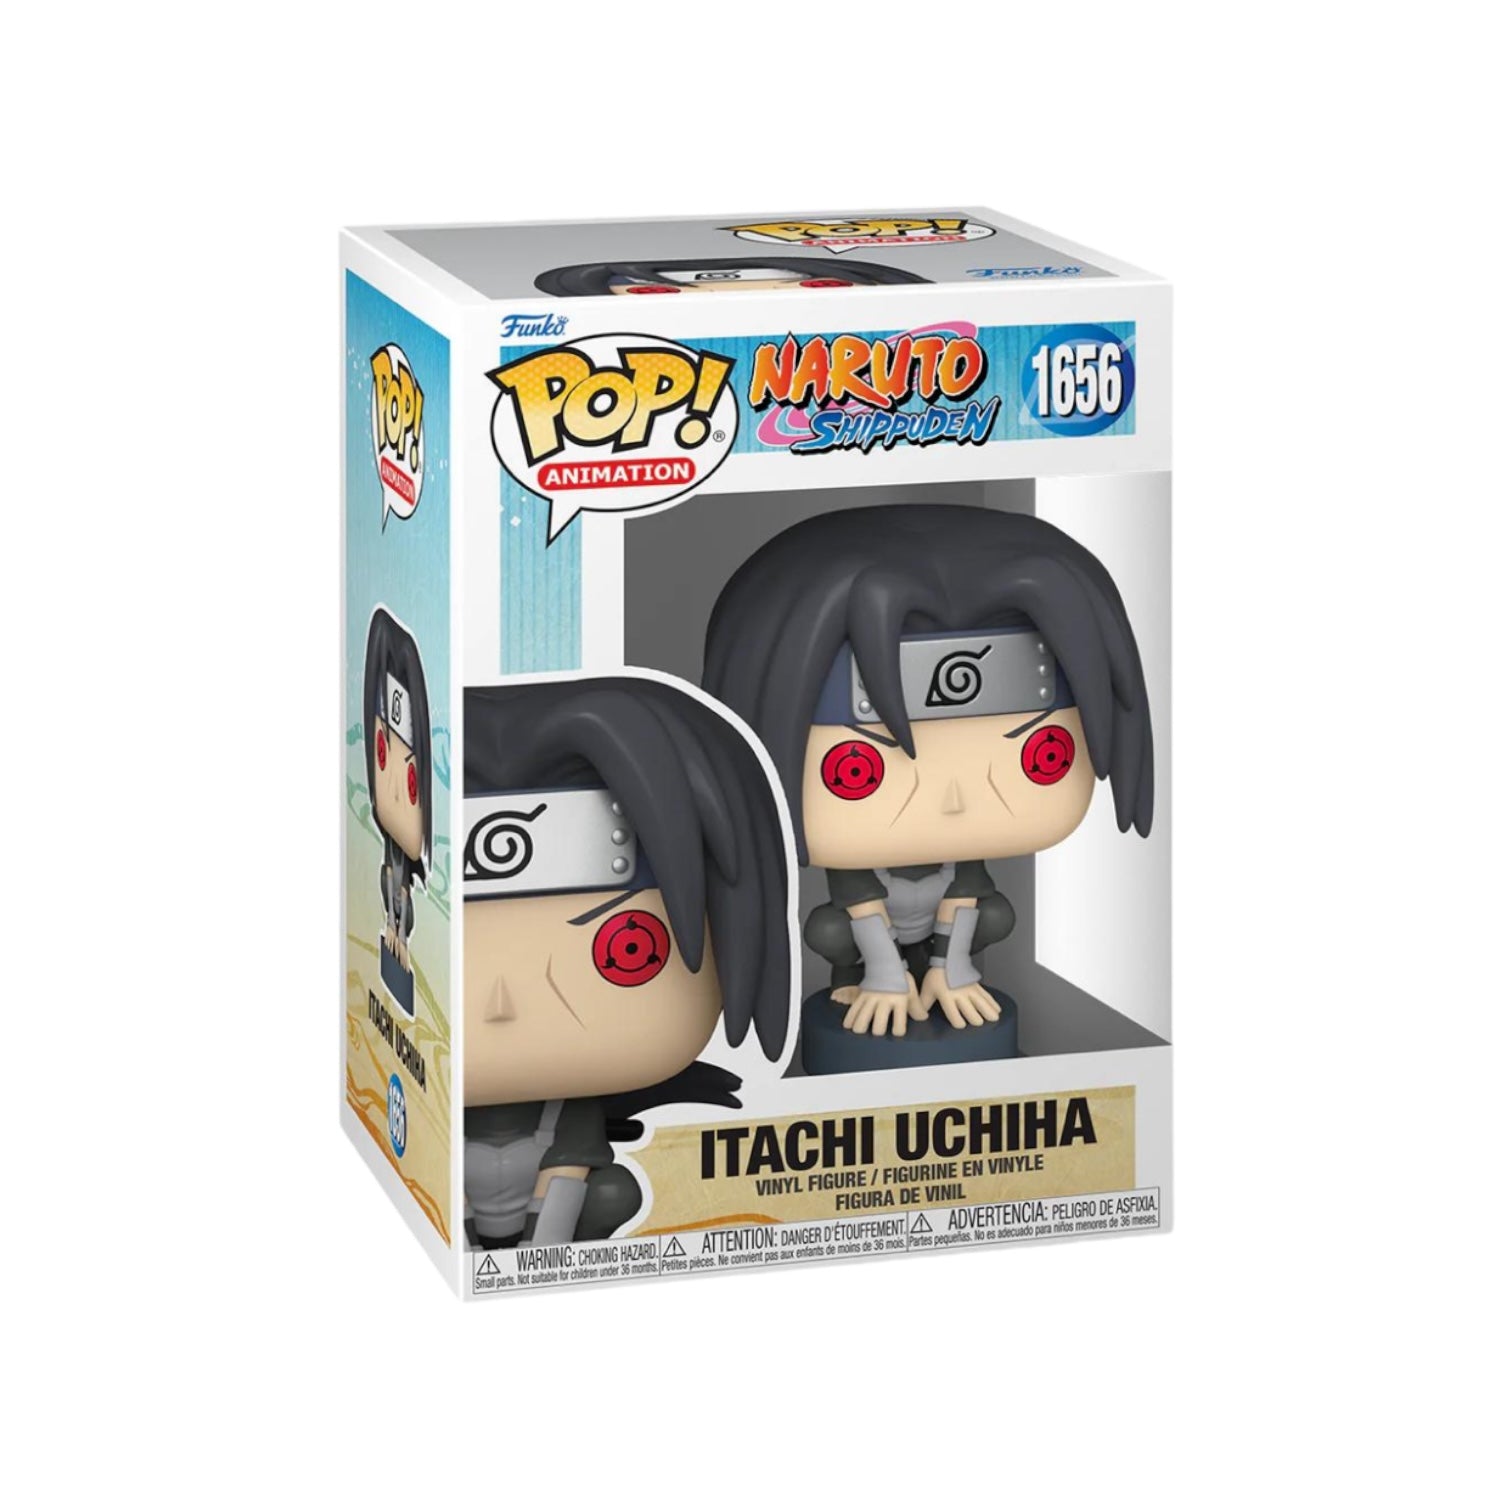 Itachi Uchiha #1656 Funko Pop! - Naruto Shippuden - PREORDER